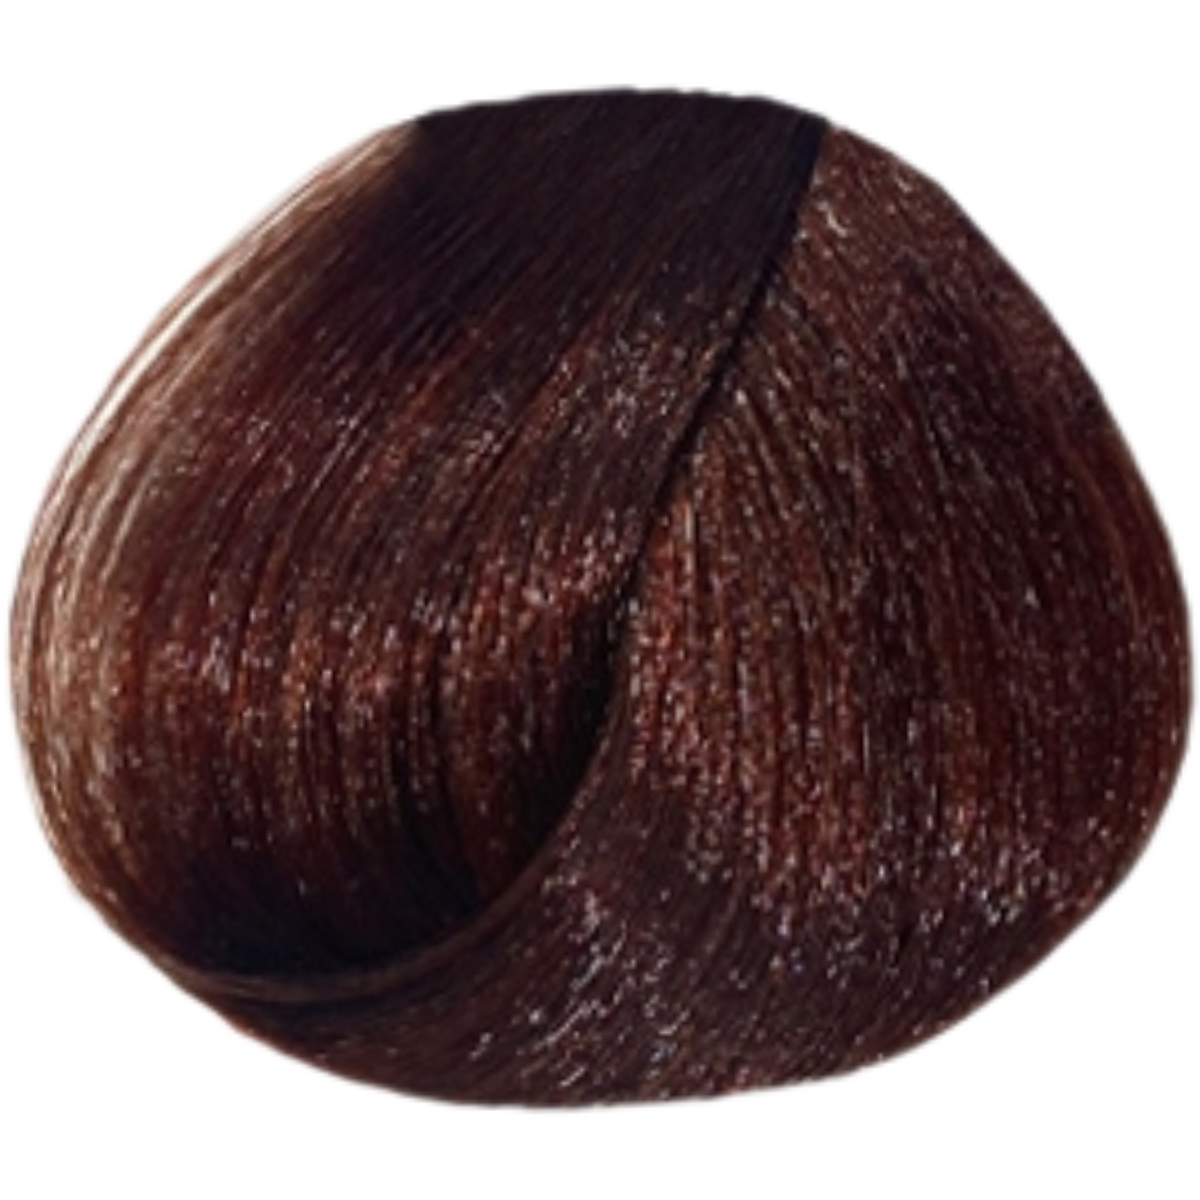 צבע שיער 6.46 DARK COPPER RED BLONDE פארמויטה FarmaVita צבע לשיער 100 גרם